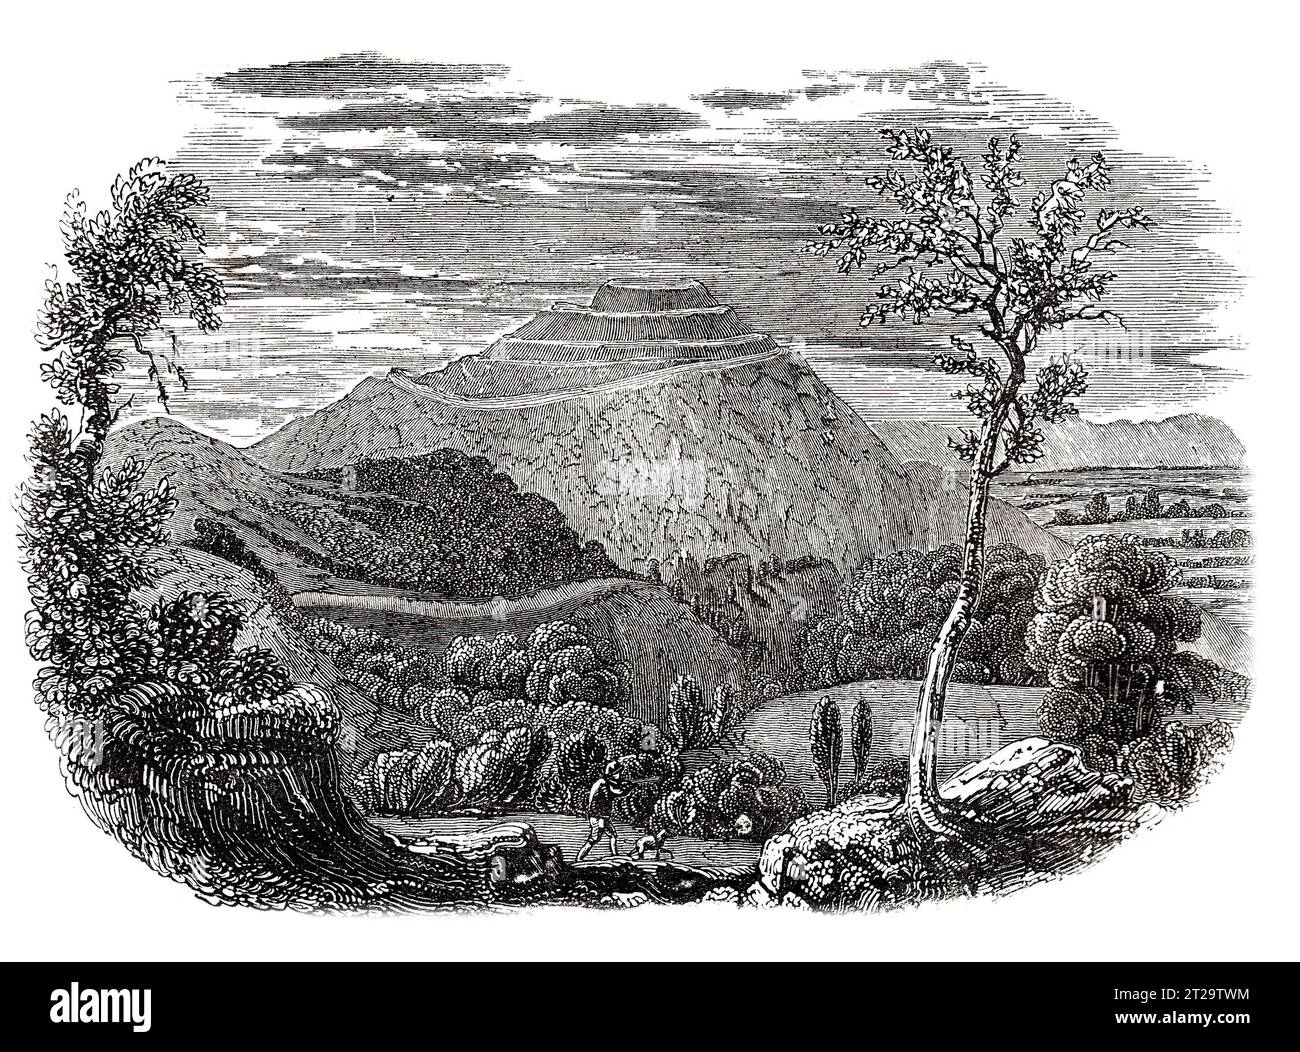 Le camp britannique, fort de l'âge du fer, Herefordshire Beacon, Malvern Hills. 19e siècle. Illustration en noir et blanc de la 'Vieille Angleterre' publiée par James Sangster en 1860. Banque D'Images